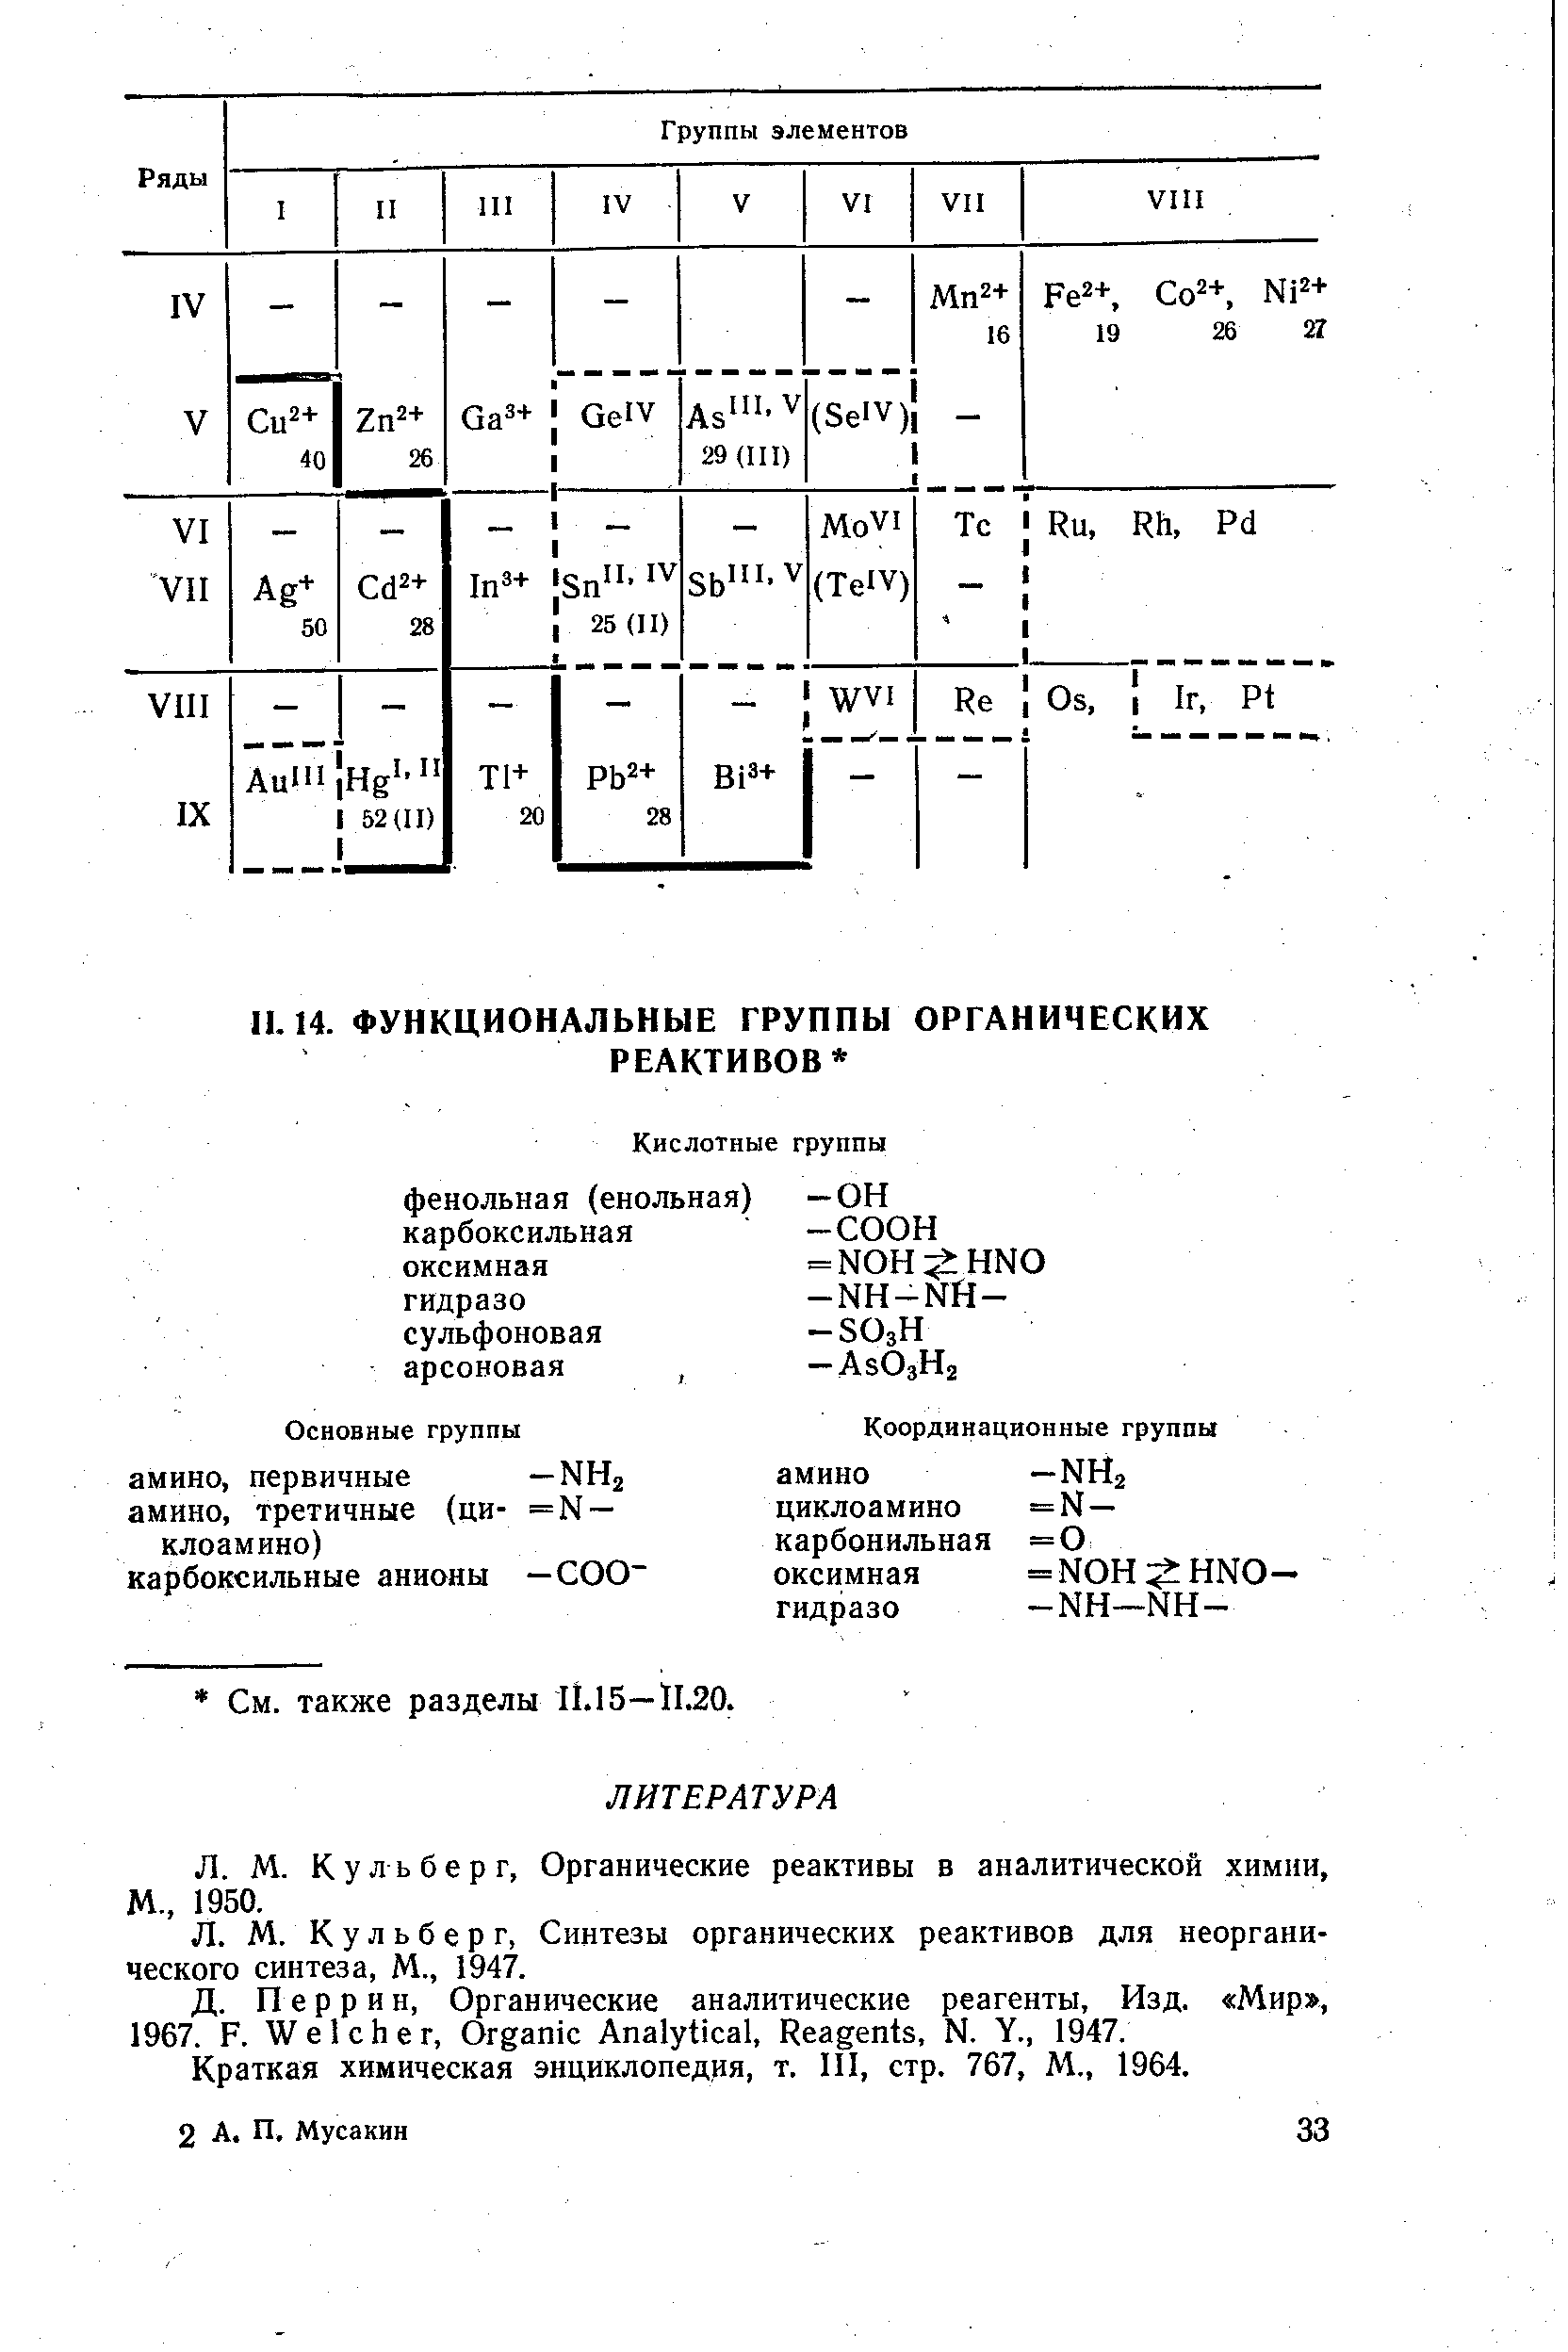 Кульберг, Органические реактивы в аналитической химии, М., 1950.